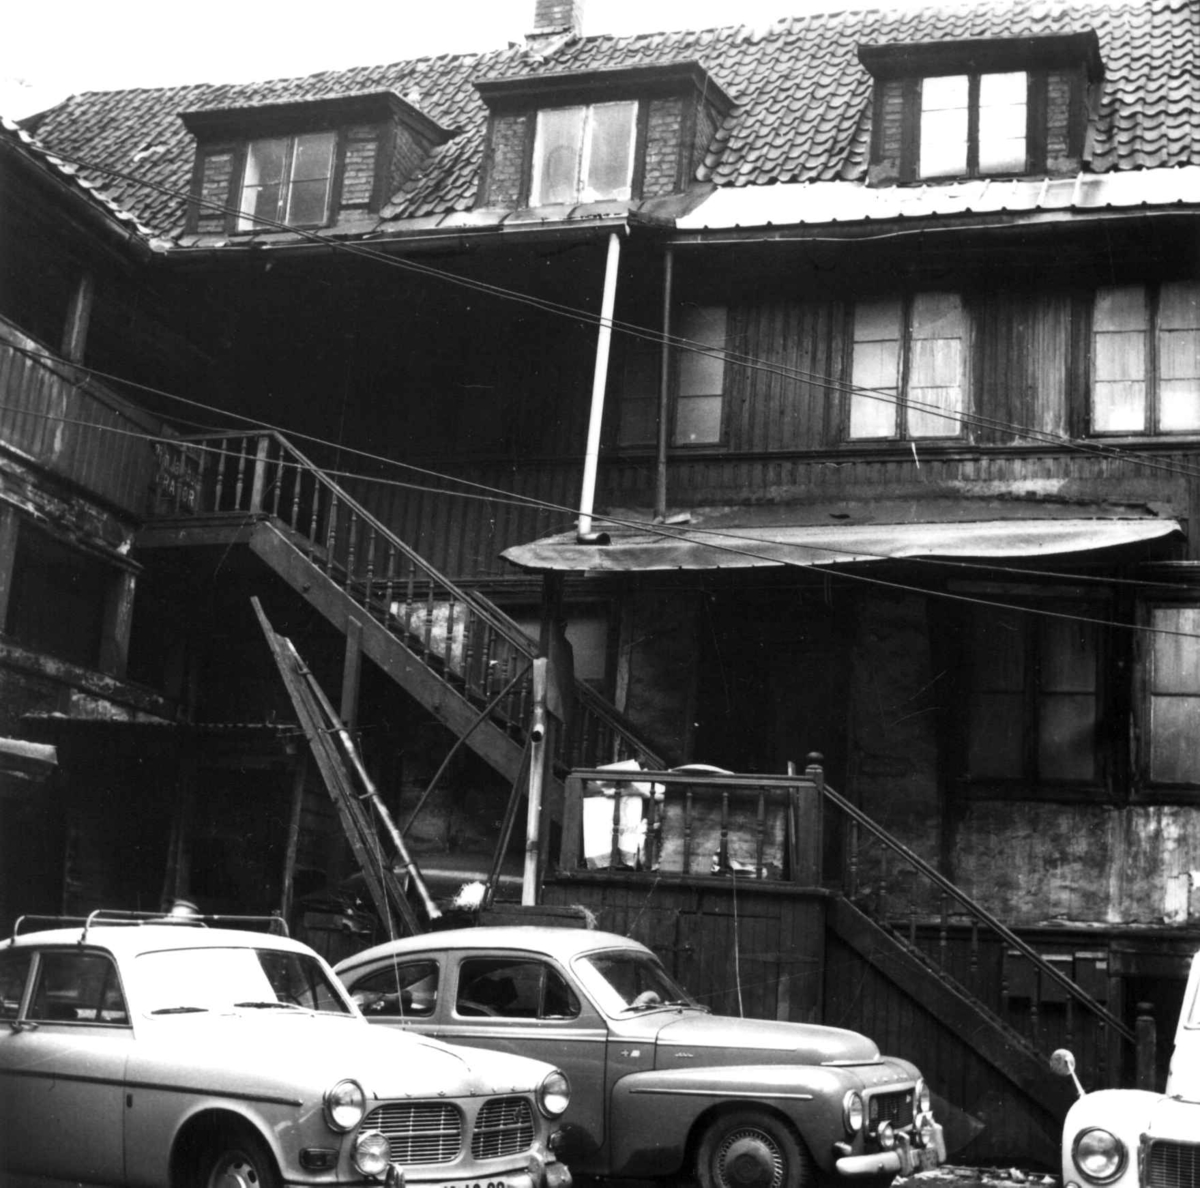 Dreierverksted i Storgata 4, Oslo. Fotografert før Norsk Folkemuseum rev huset i 1969.
